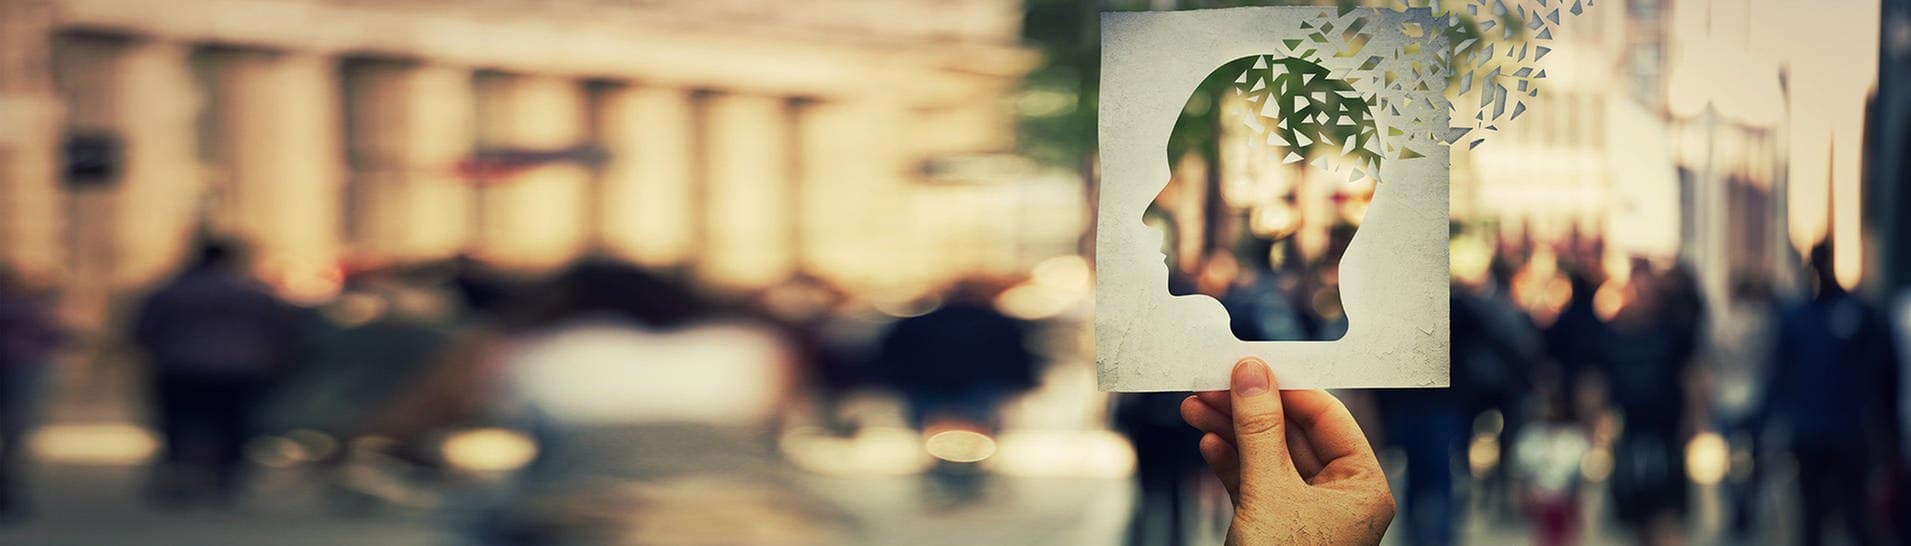 Demenz-Symbolbild: Das Profil eines Schädels ausgeschnitten in einem Papier (Foto: Adobe Stock, 1STunningART)